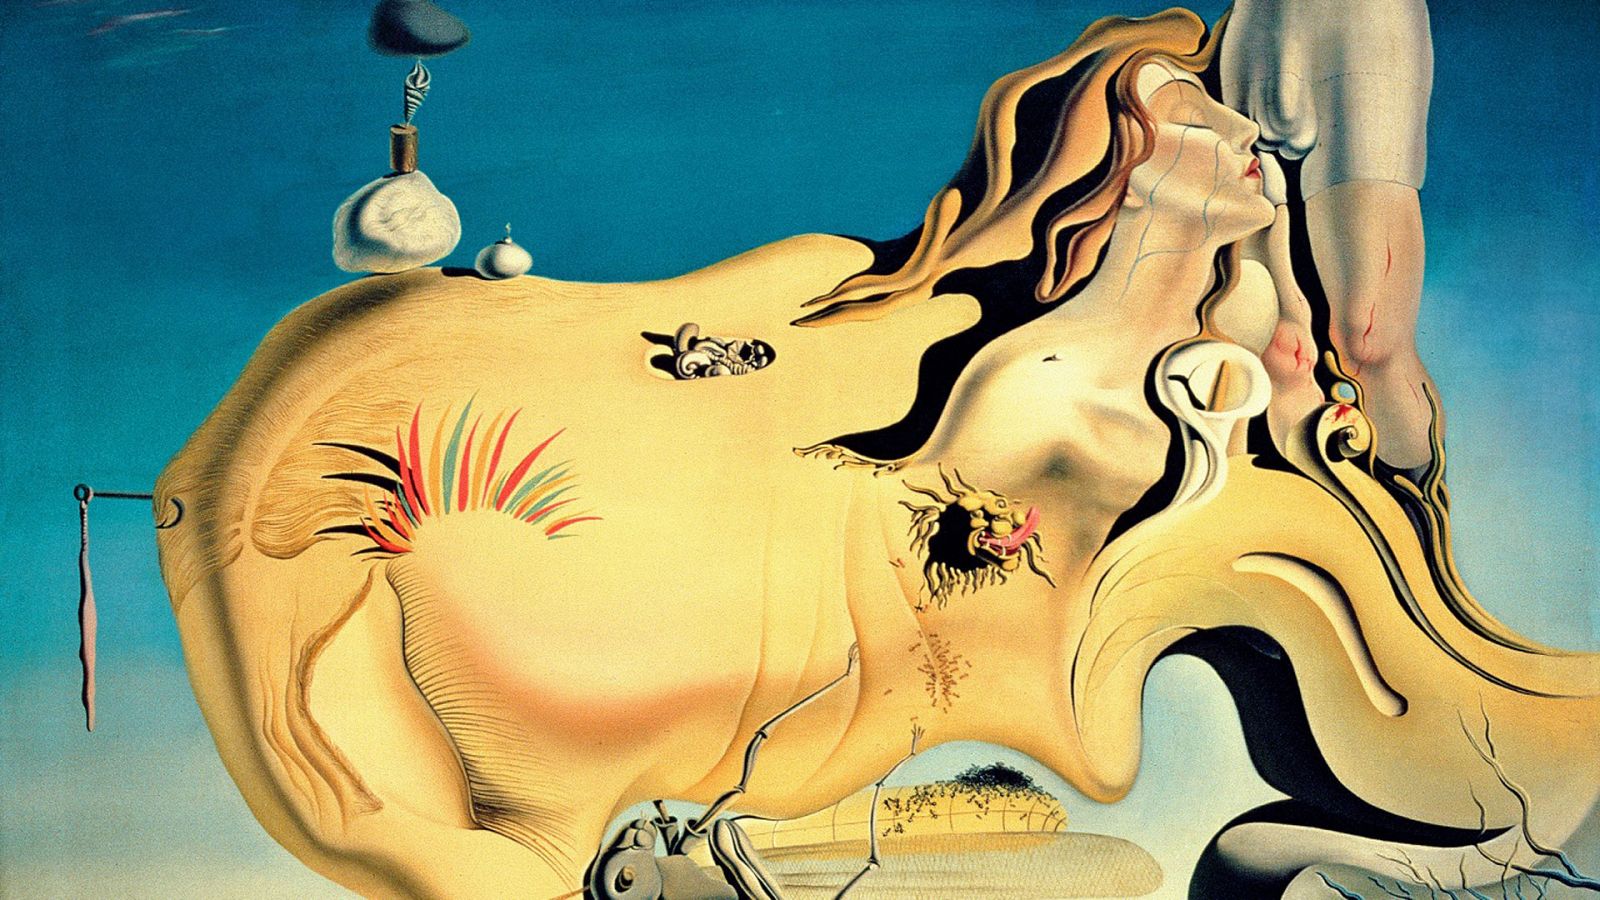 La noche temática - Salvador Dalí: Las dos caras de un genio